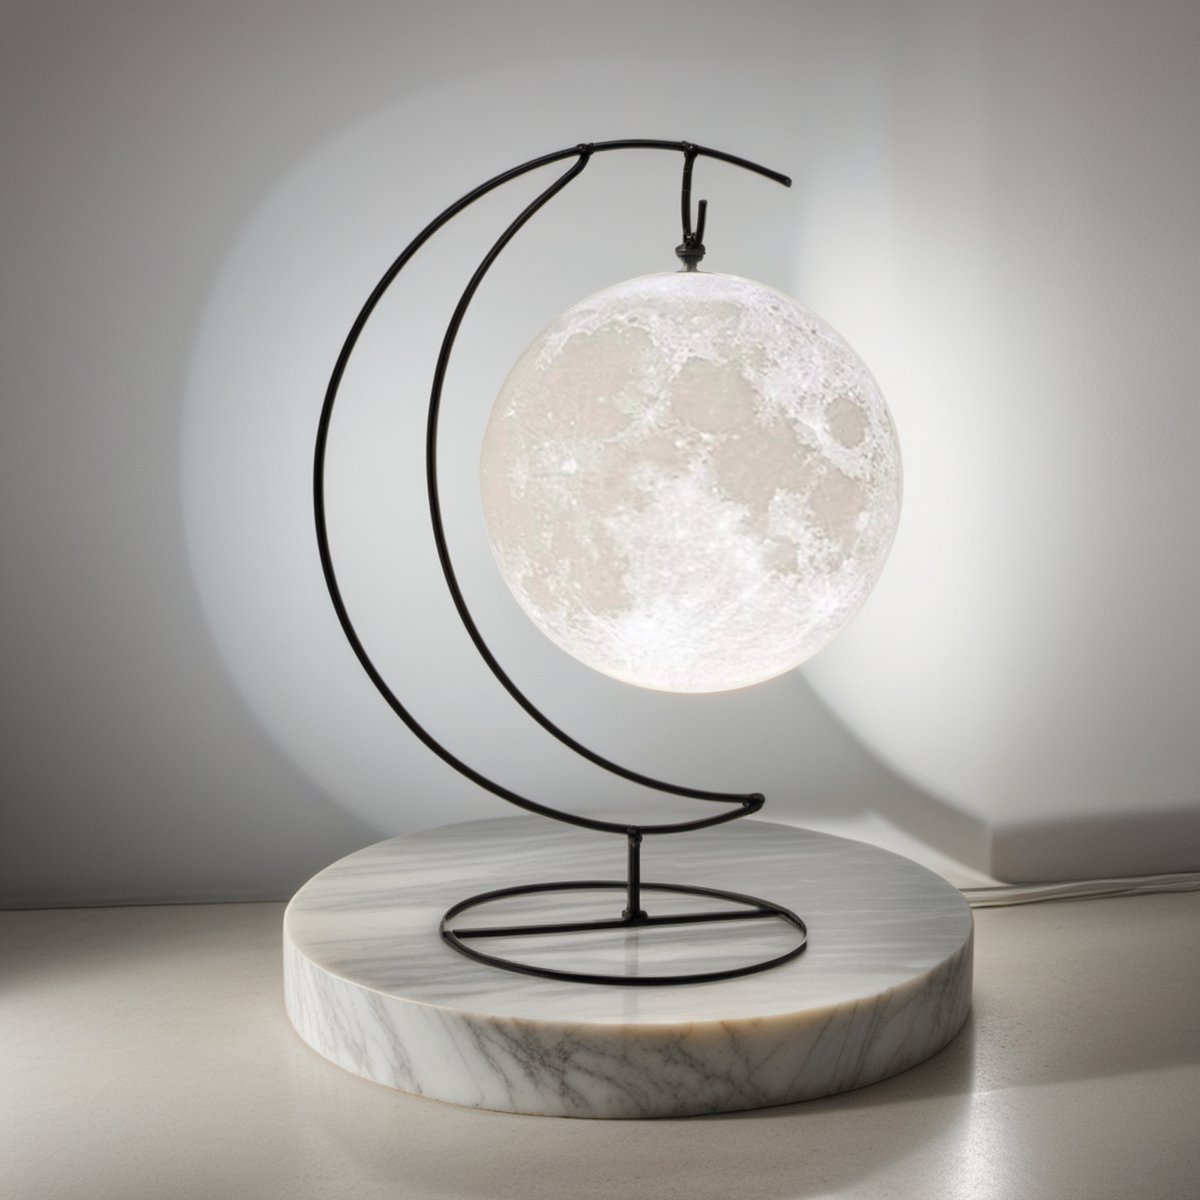 Lukana Maanlamp 3D Tafellamp 13 cm met 16 Dimbare LED Kleuren & Afstandsbediening - Nachtlamp